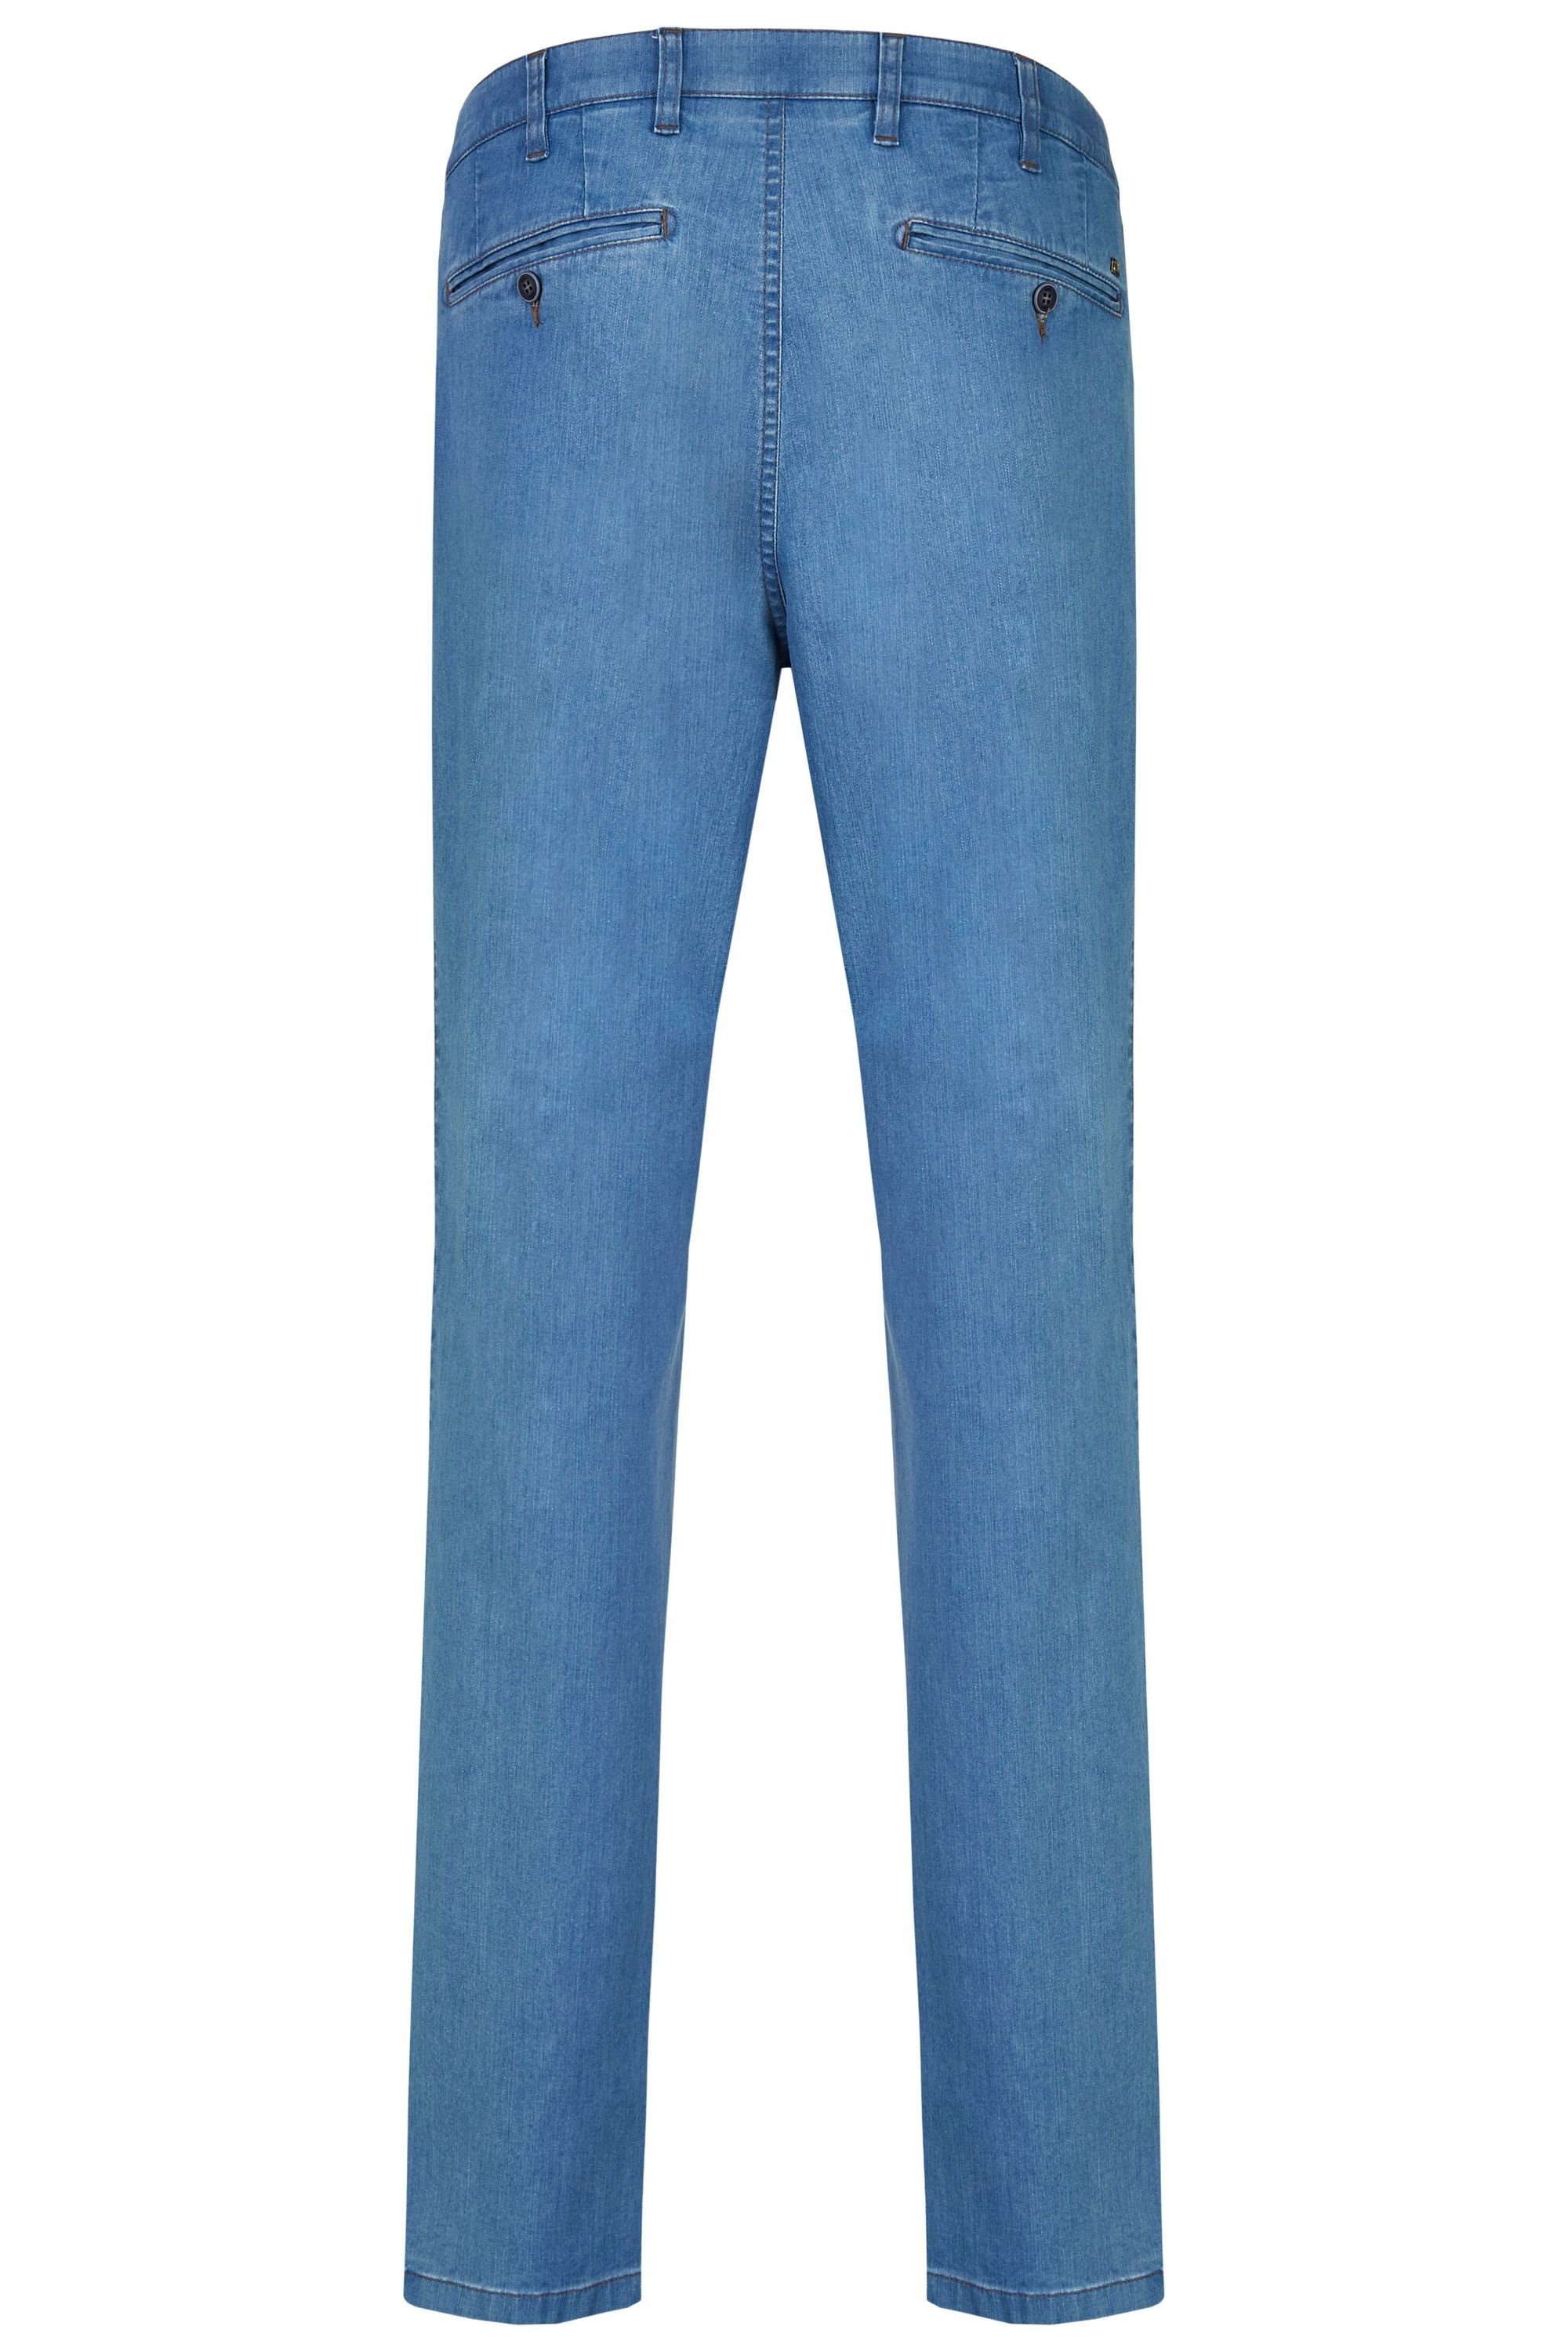 aubi: Bequeme Jeans aubi Perfect bleached aus 577 Jeans Flex Baumwolle Stretch Modell Sommer Herren (43) Hose High Fit